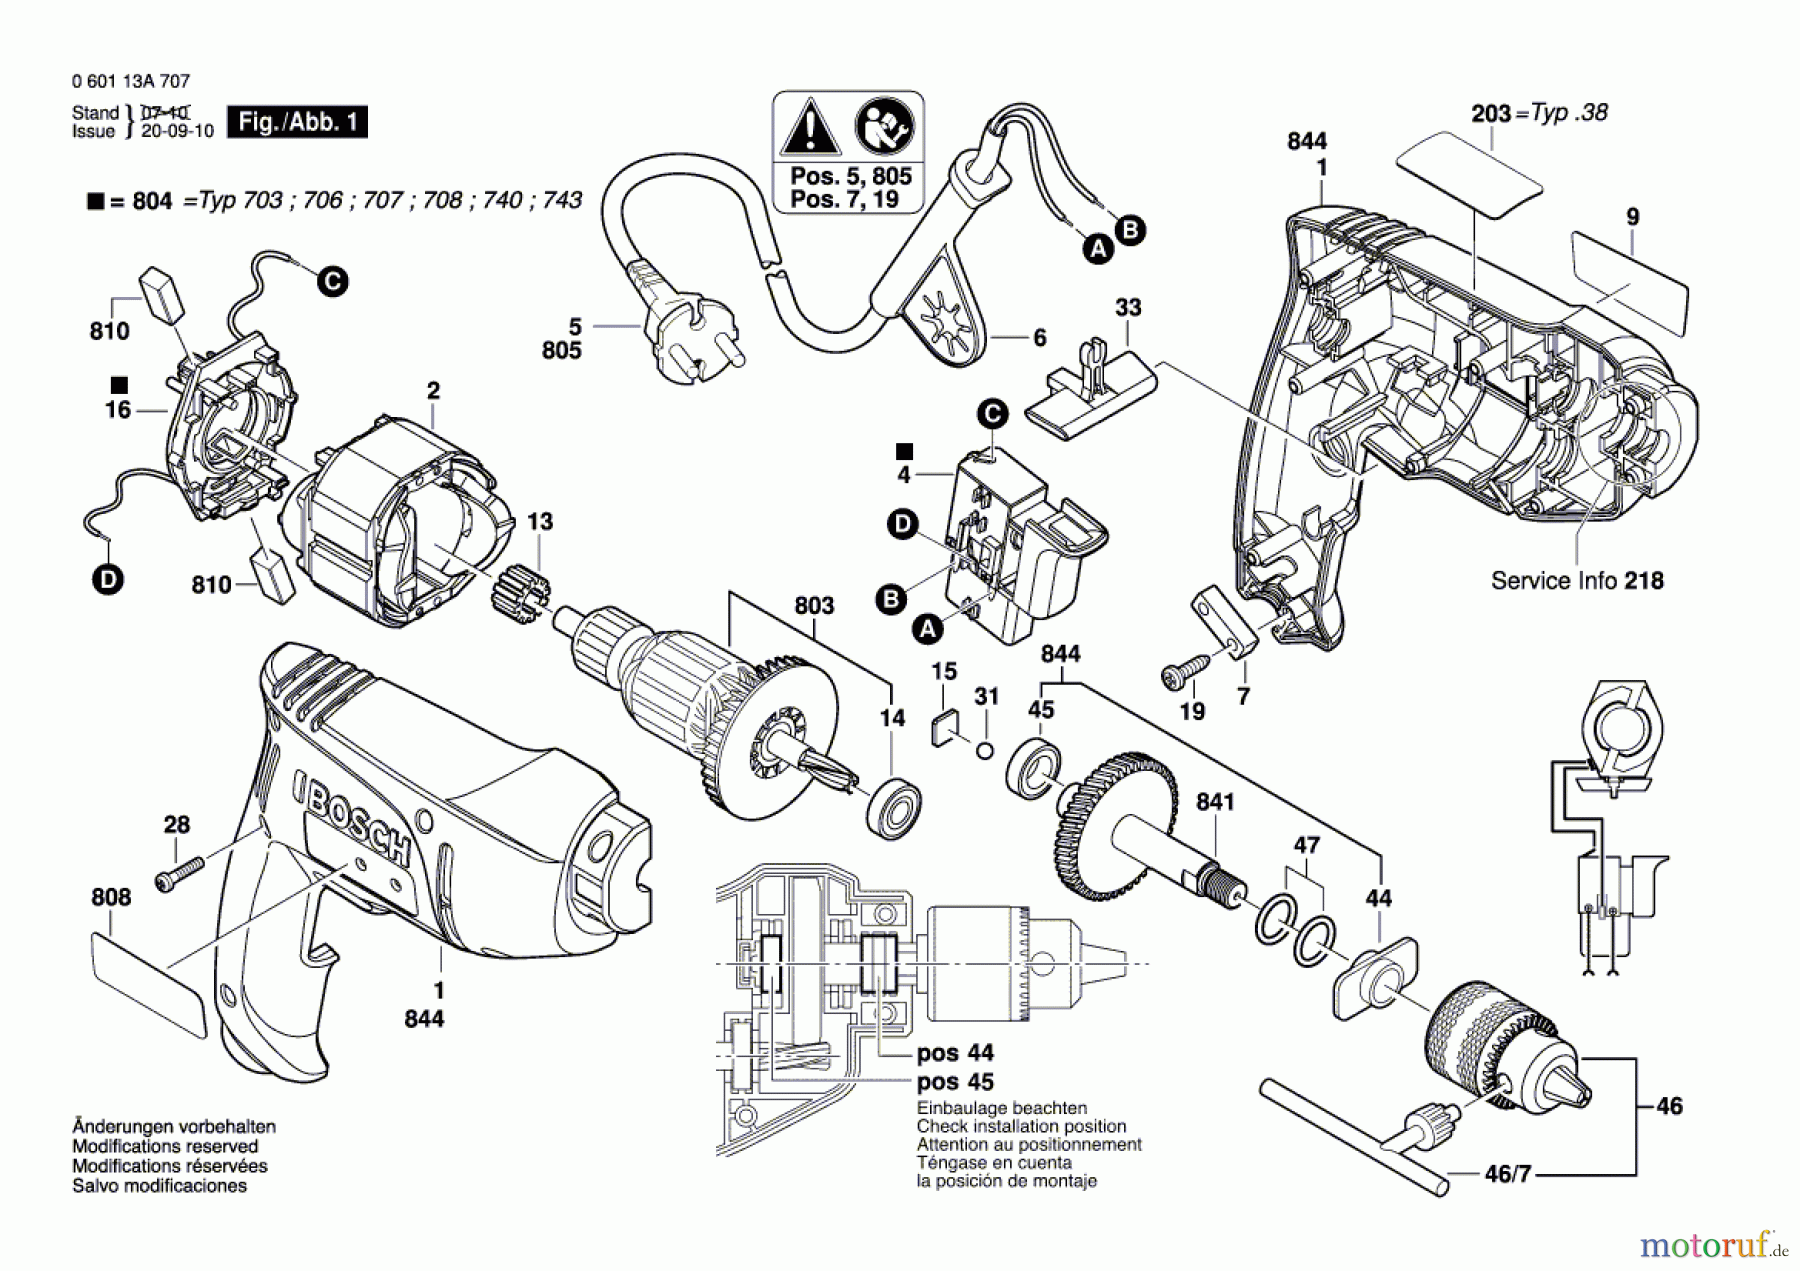  Bosch Werkzeug Bohrmaschine GBM 350 RE Seite 1